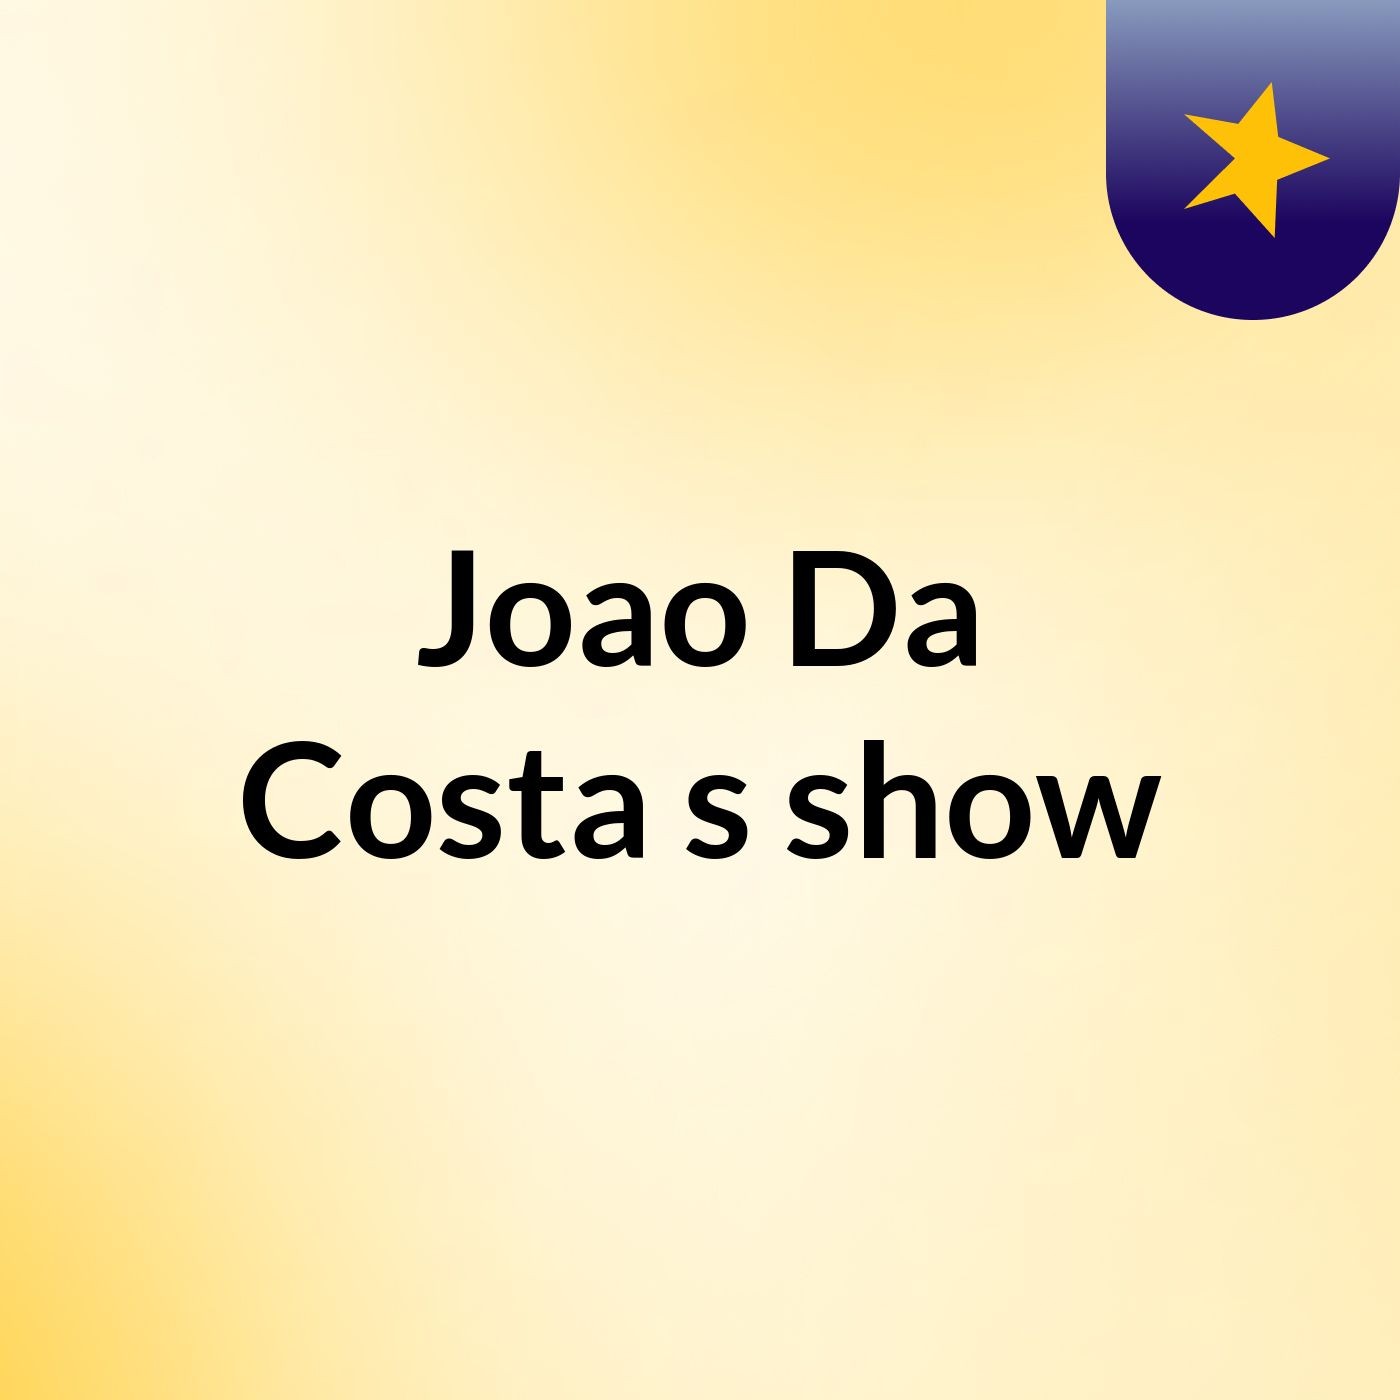 24/9/2020/ João Da Costa Original